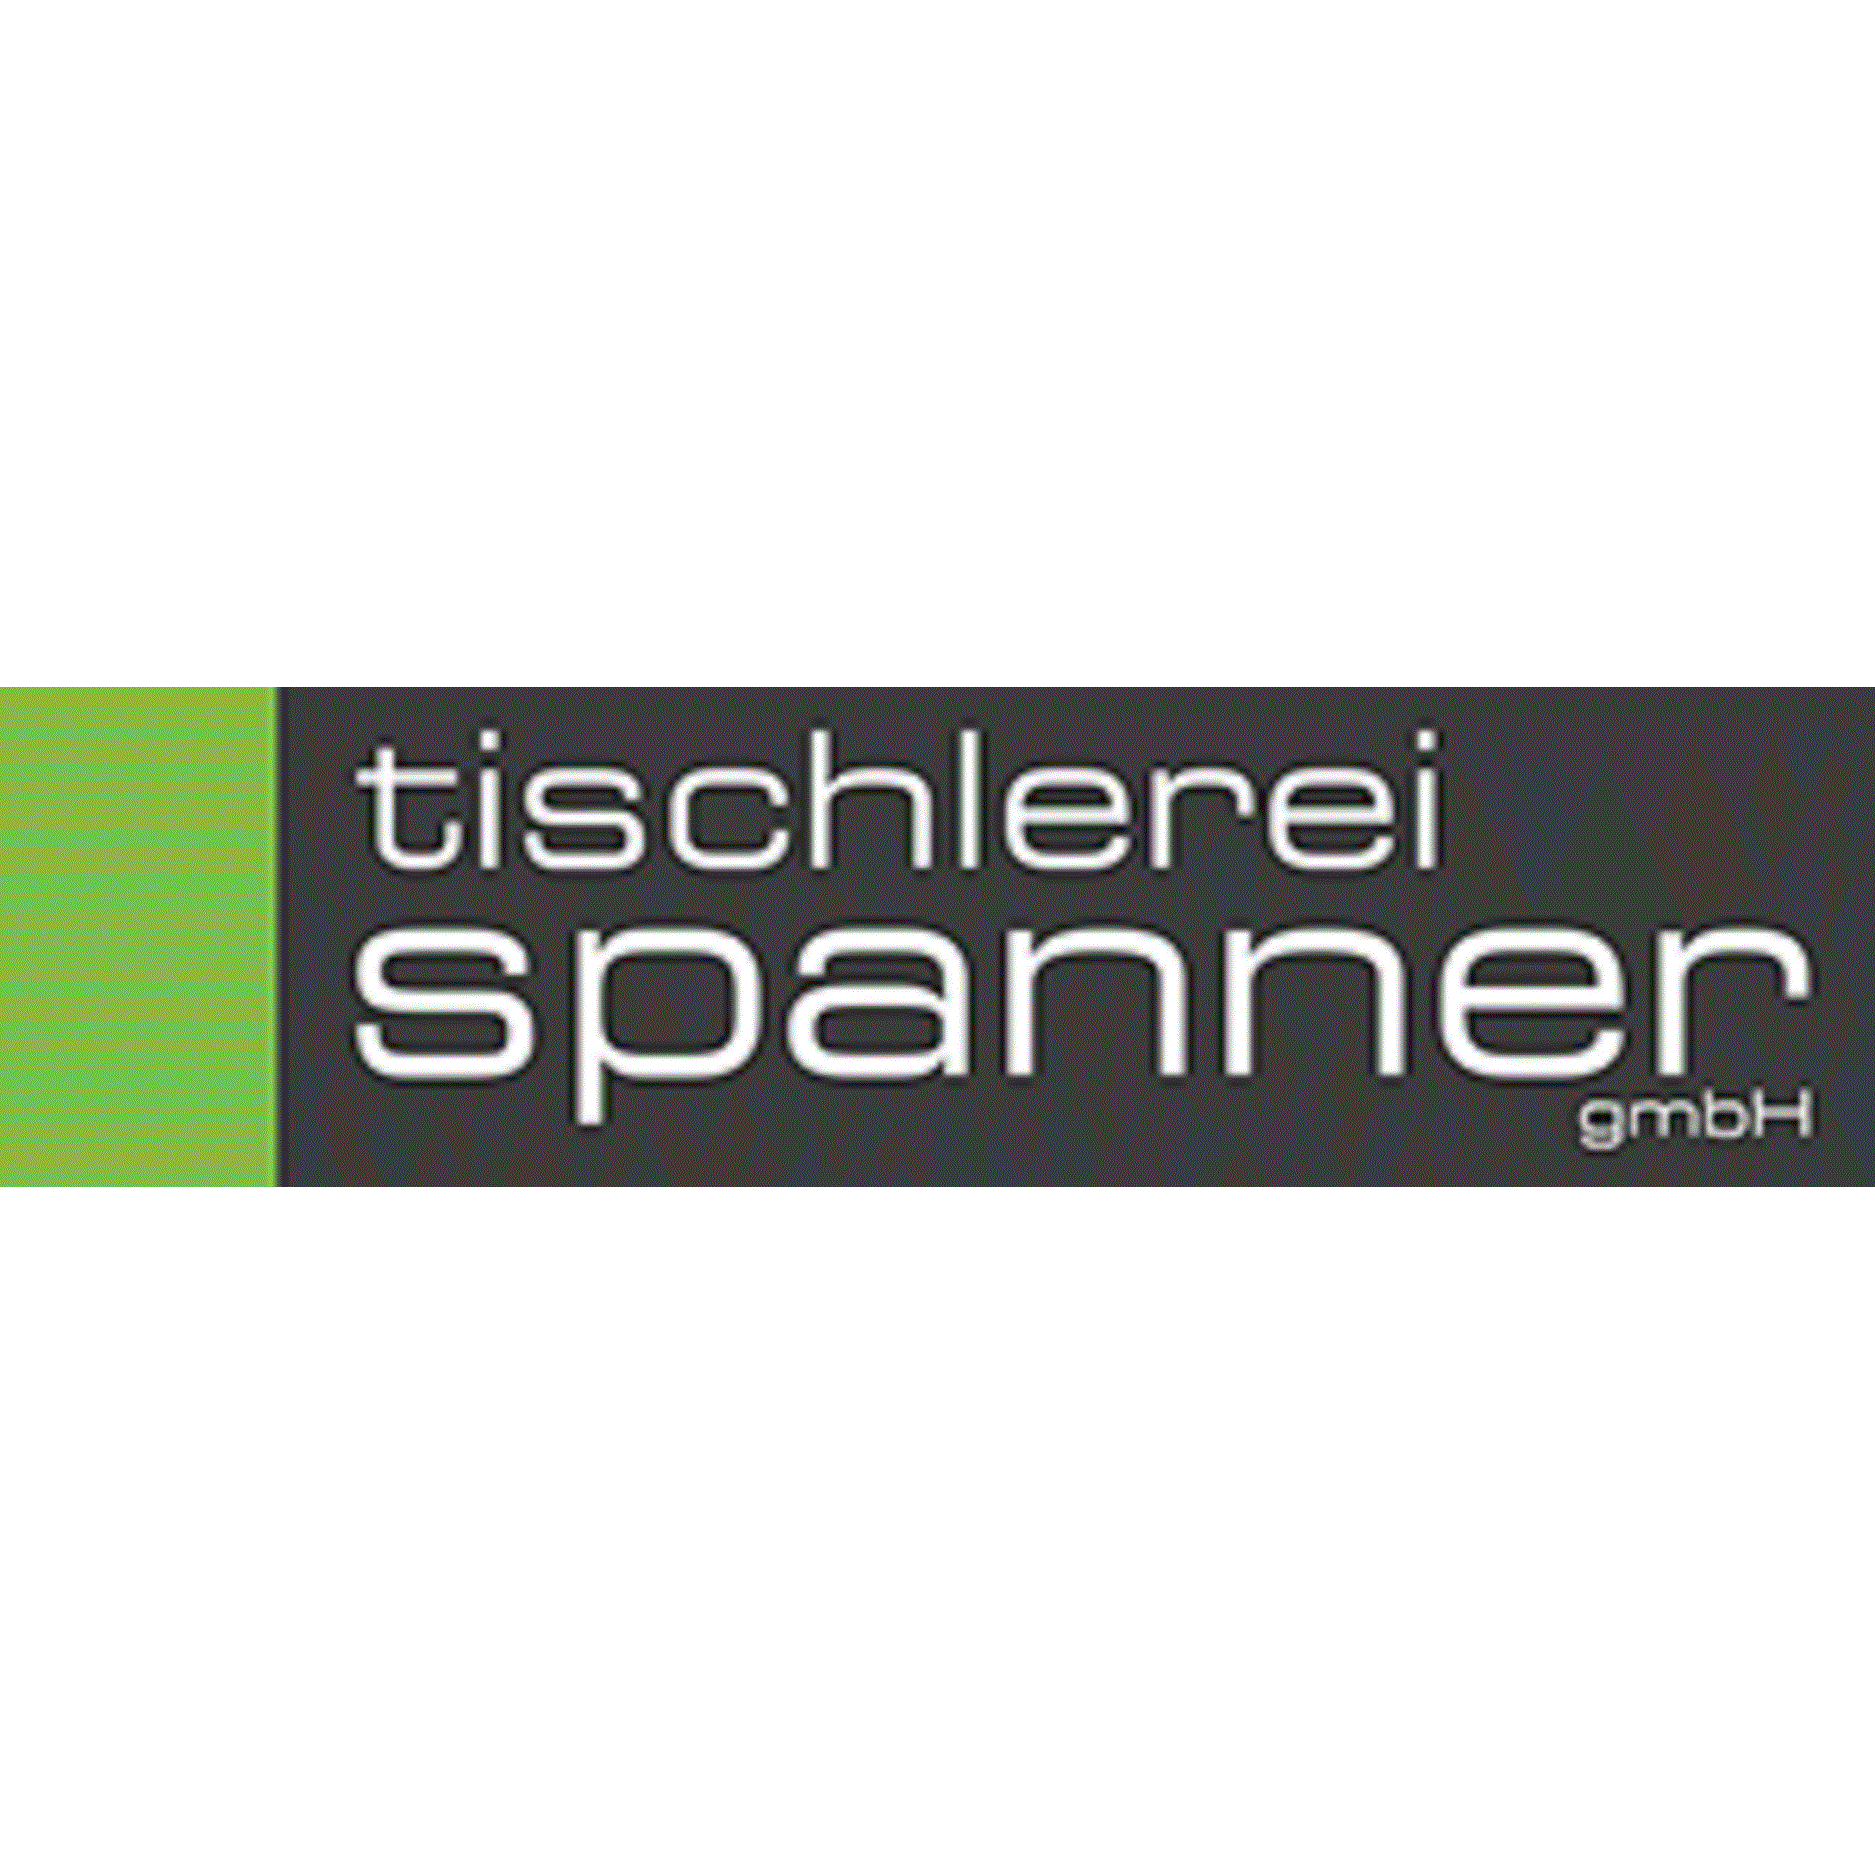 Tischlerei Spanner GmbH